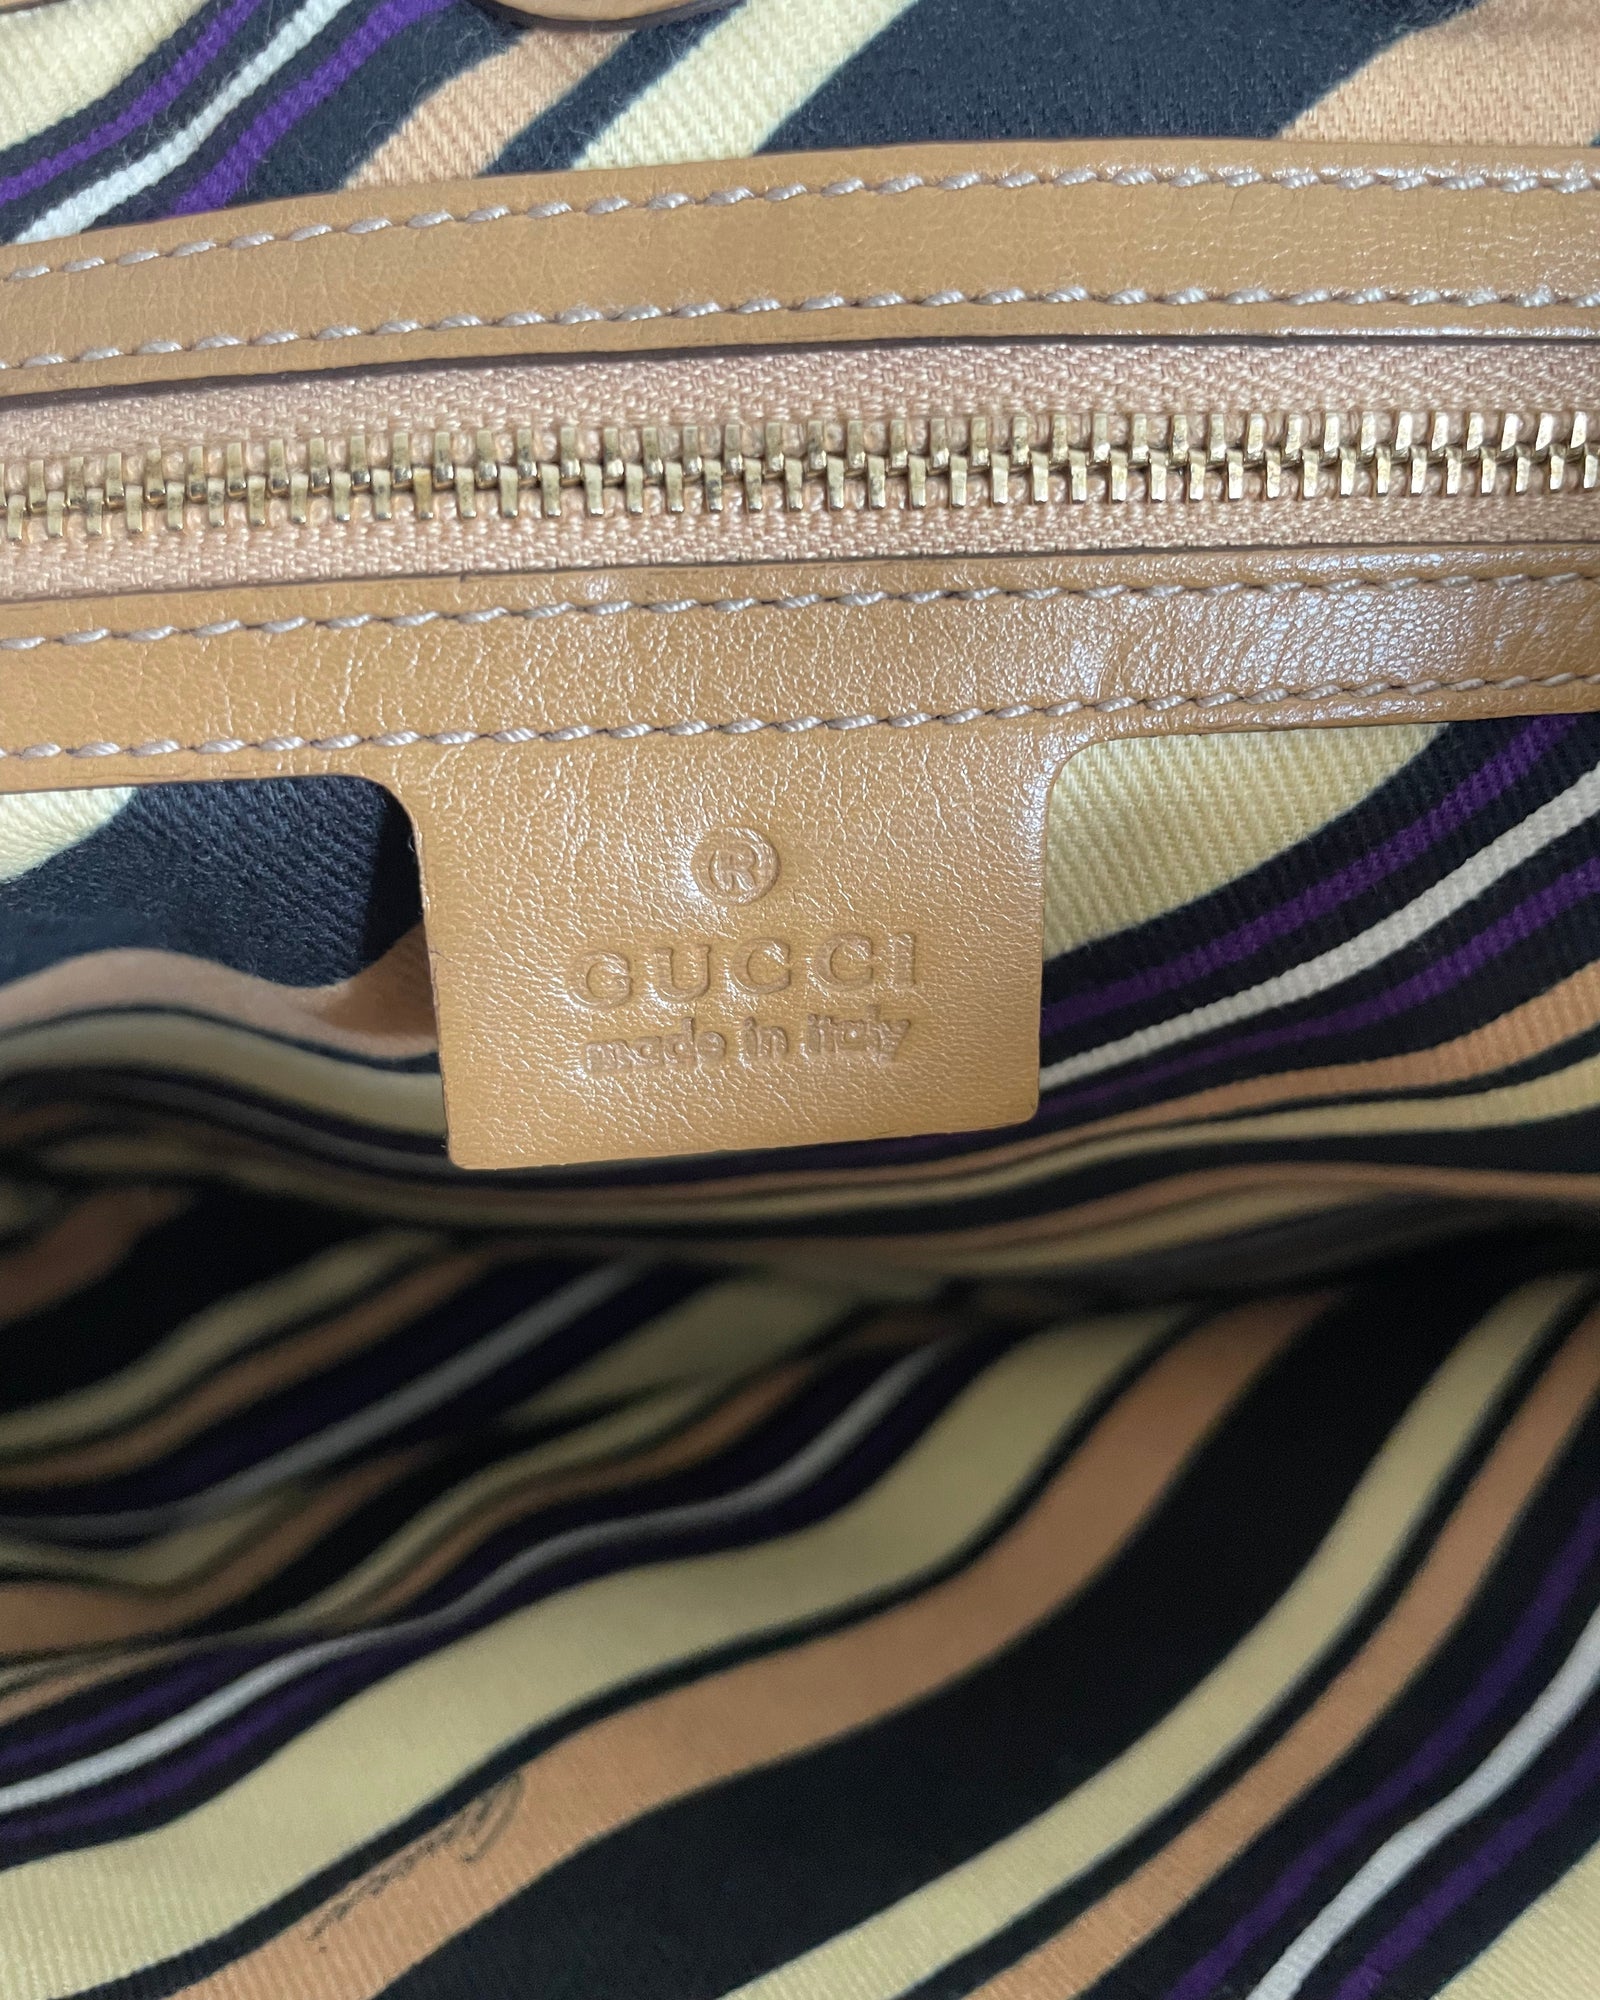 Sac Gucci vintage en cuir camel détail GG doré.